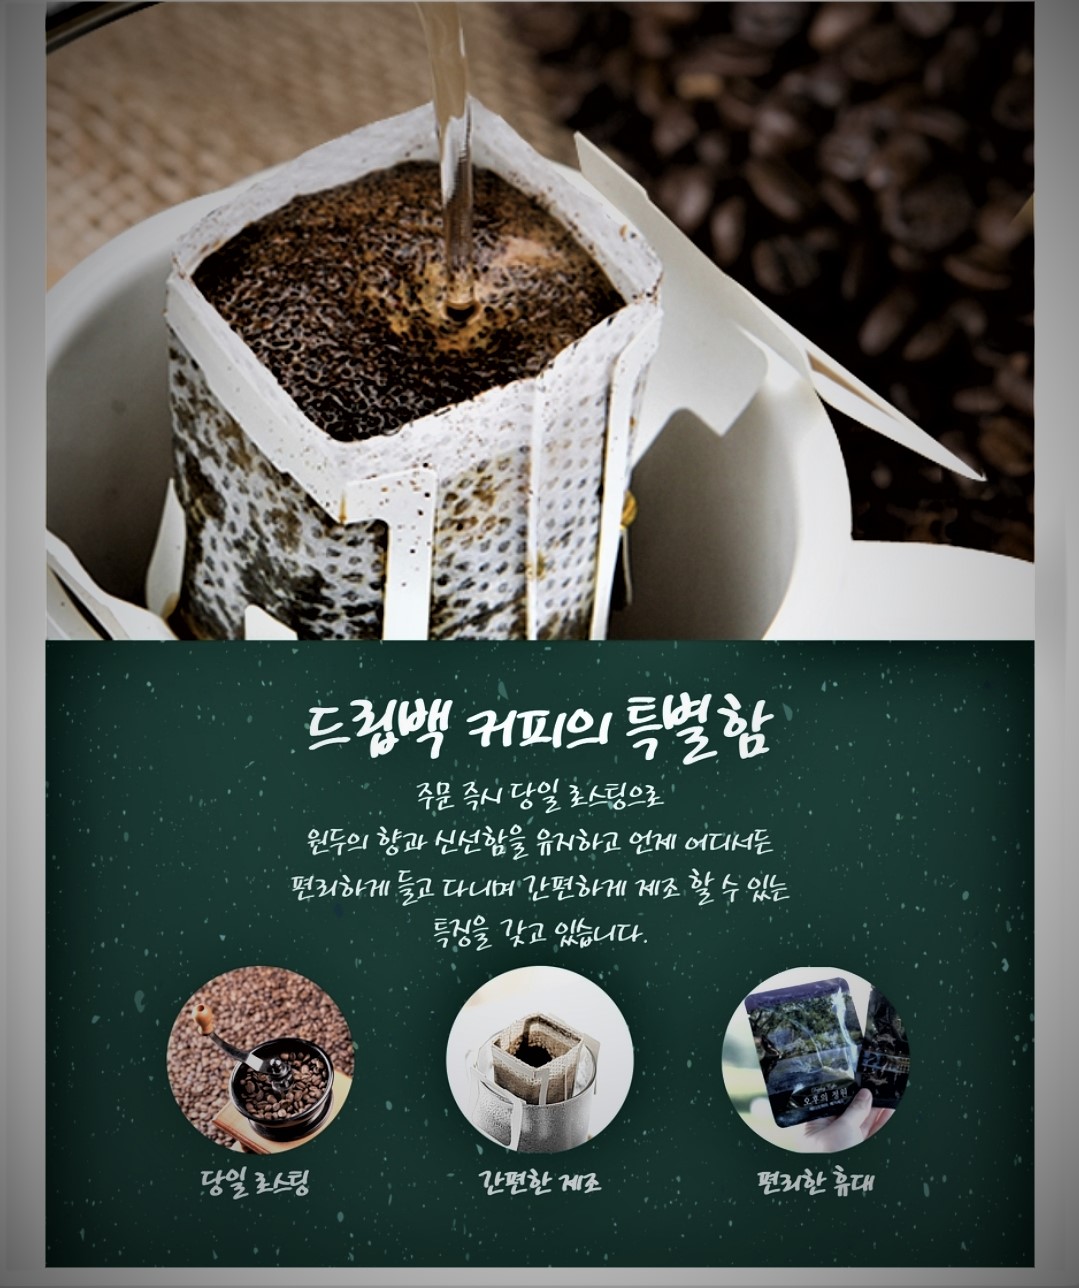 오후의 정원 드립백 커피 원두 개별 선택 가능 (1SET = 7개)